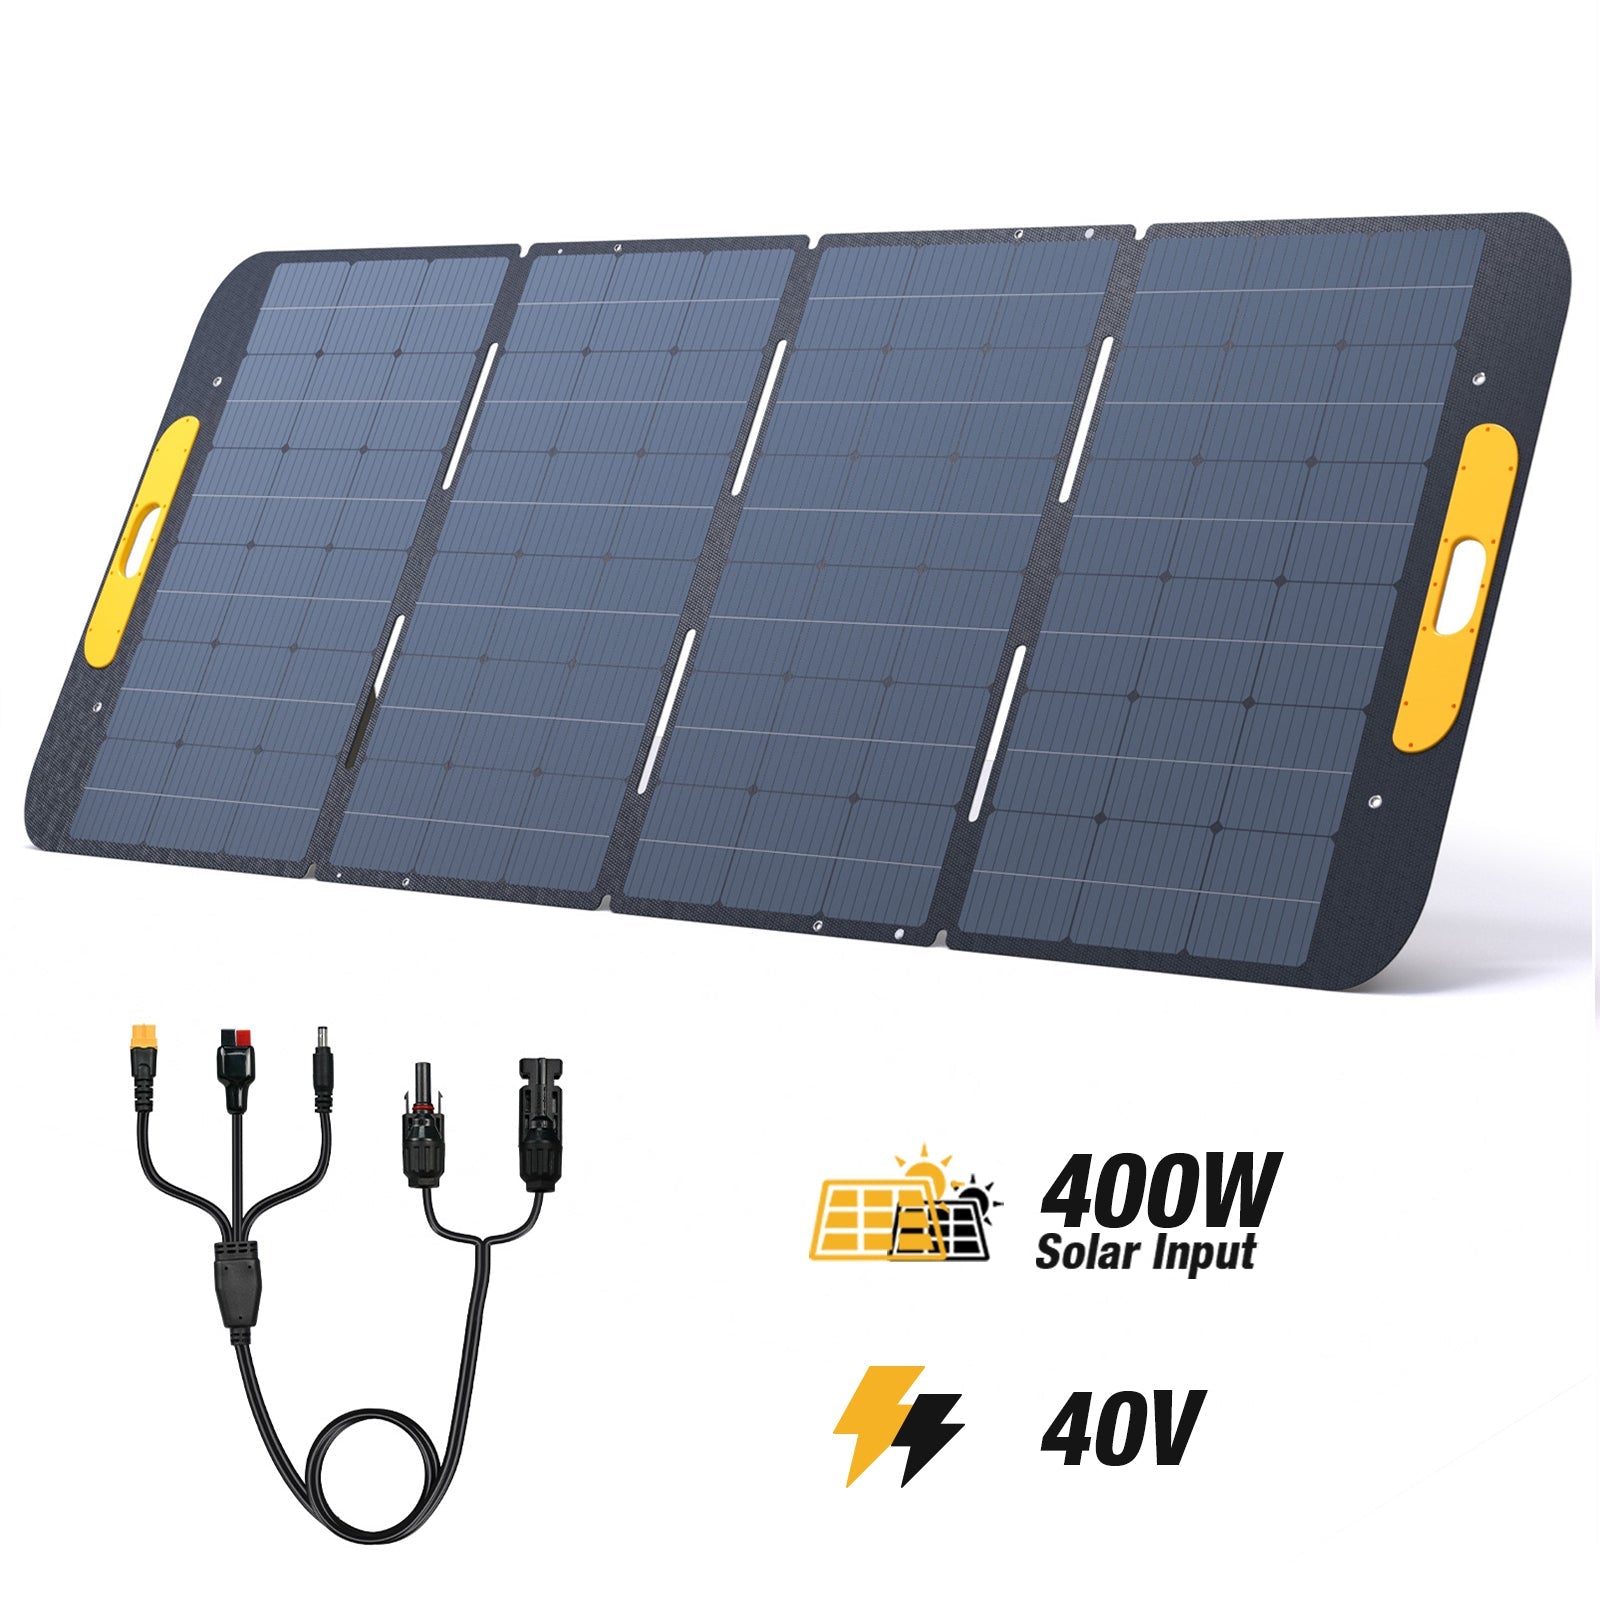 vs400-400w-40v solar panel